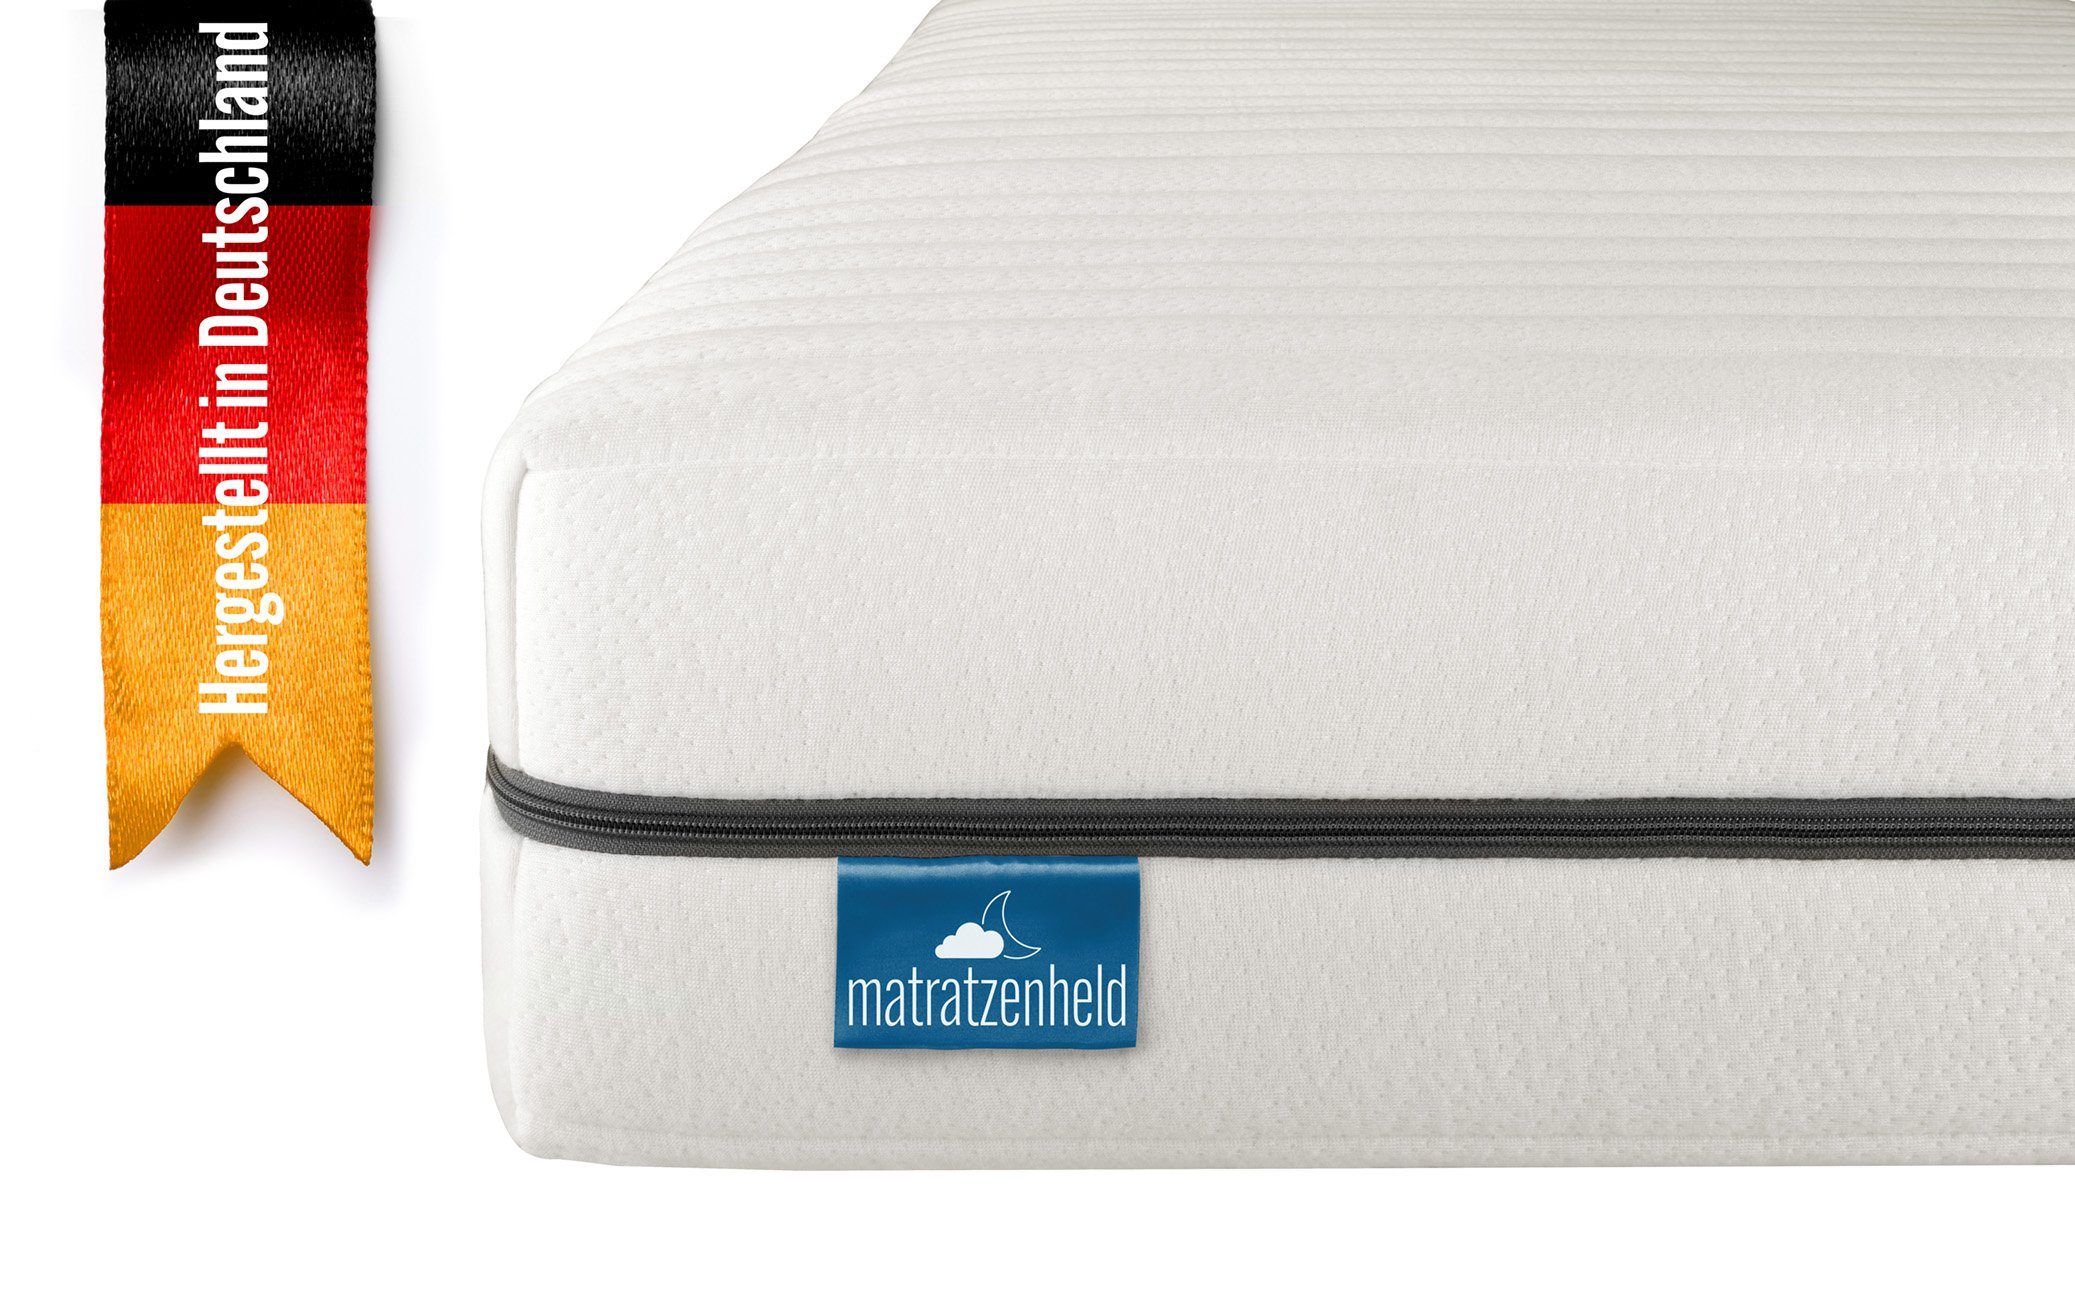 Komfortschaummatratze Wellness, Matratzenheld, 18 cm hoch, orthopädische  7-Zonen-Matratze für jede Schlafposition, Made in Germany